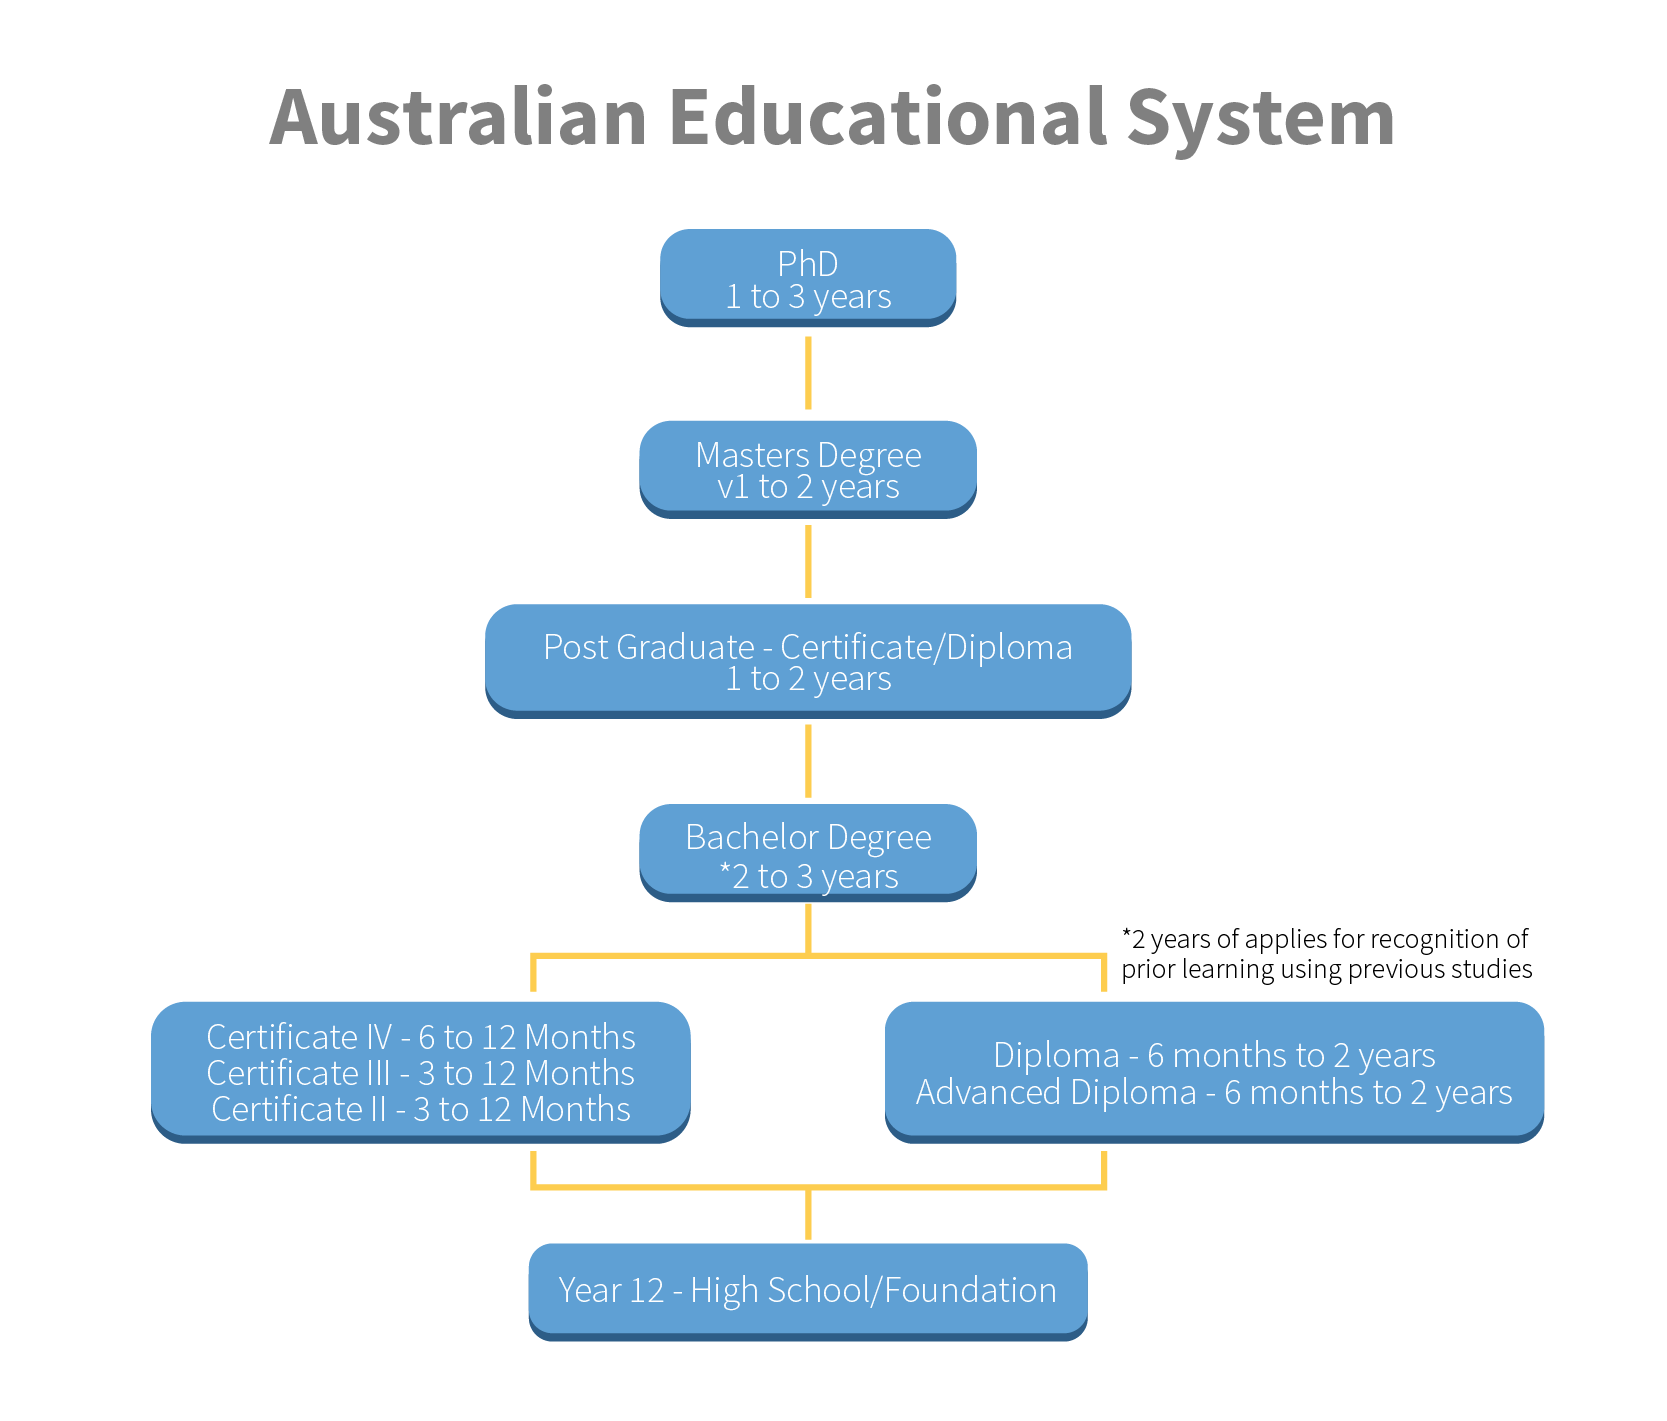 australian standard education